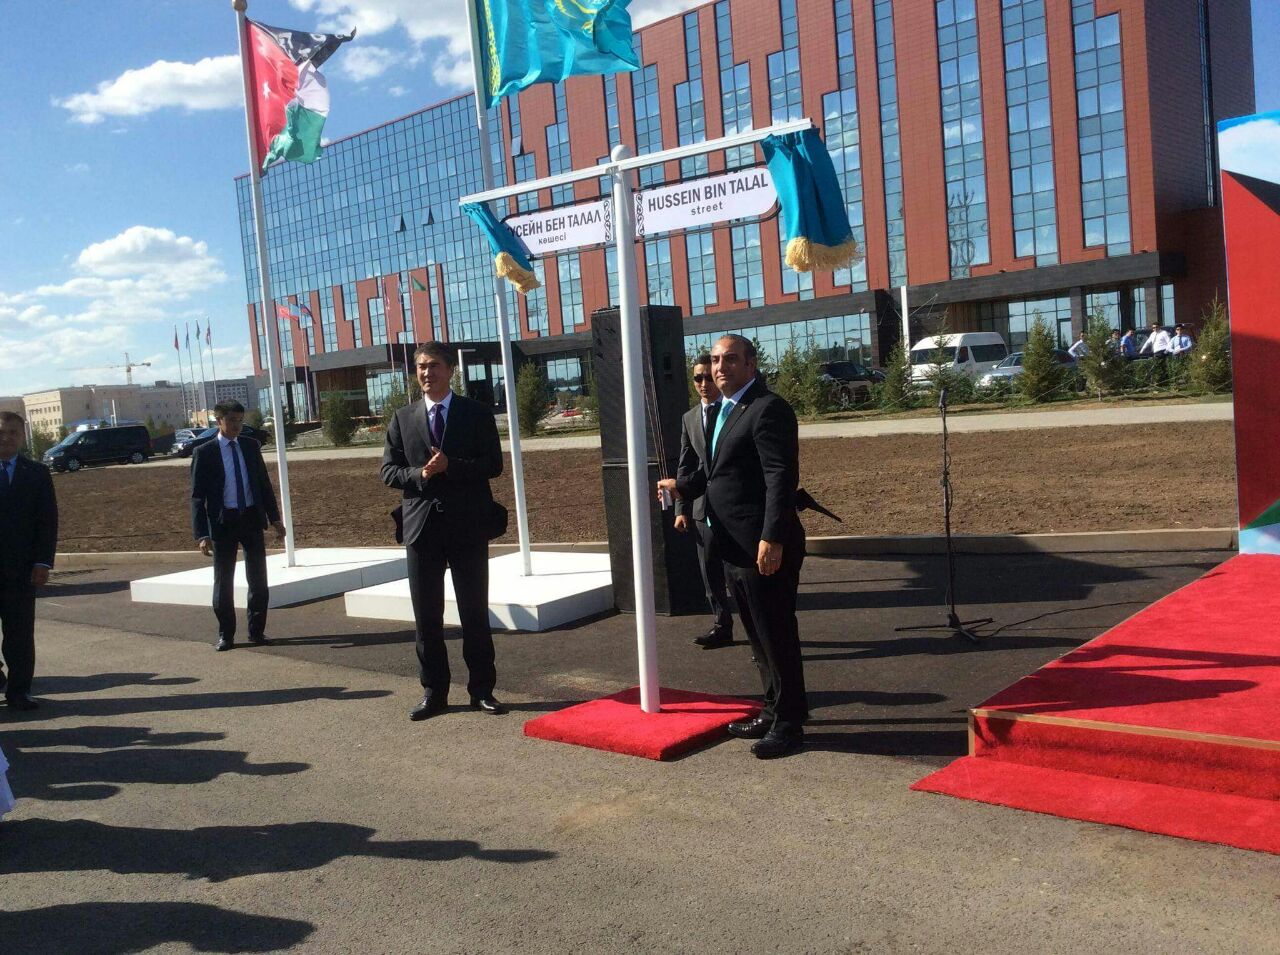 إفتتاح شارع المغفور له الملك الحسين بن طلال في موقعه الجديد في العاصمة الكازخية أستانا